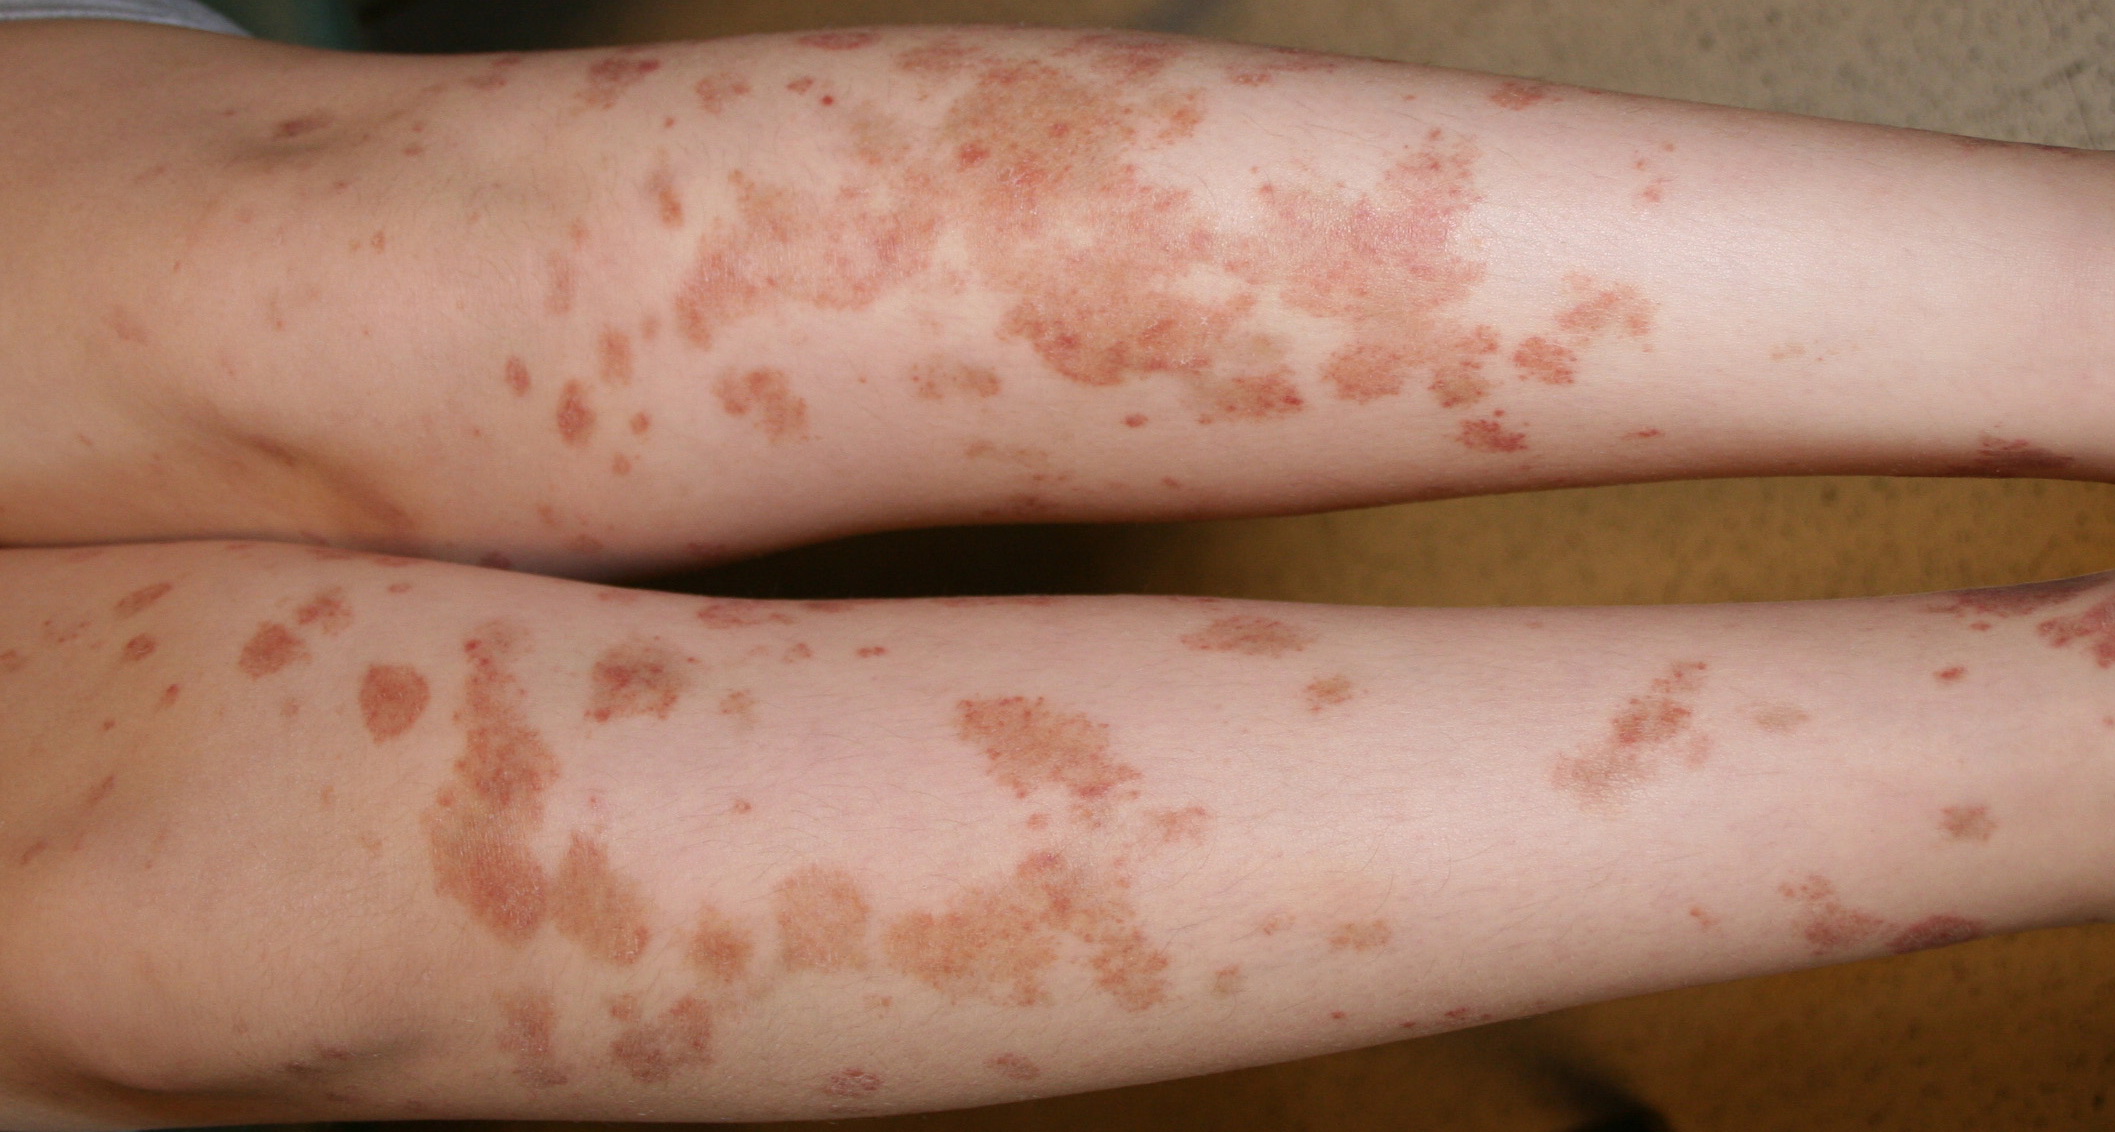 Allergic Contact Dermatitis - skinsight